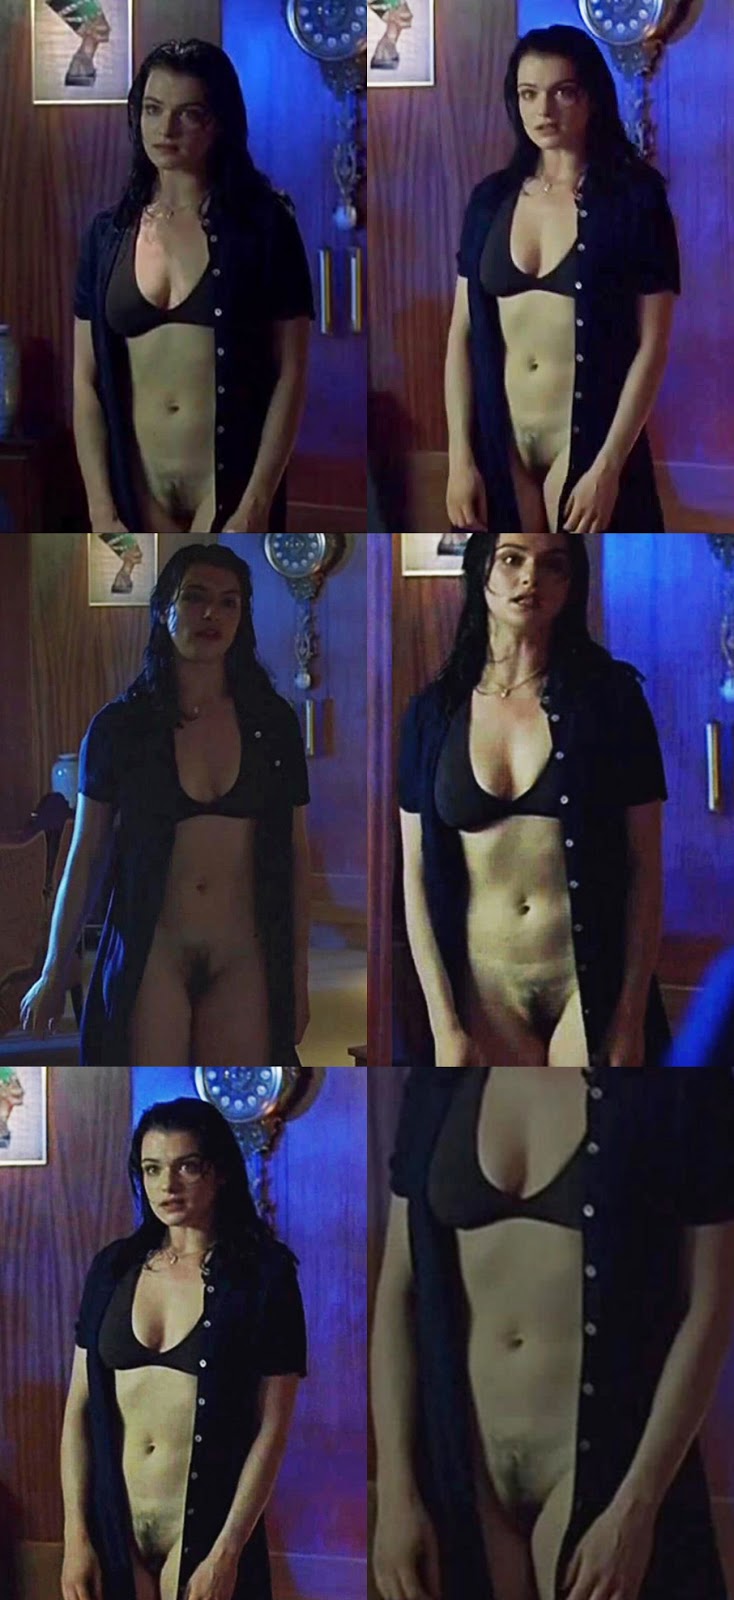 Rachel Weisz Nude Porn - Rachel weisz nude gallery - XXX photo